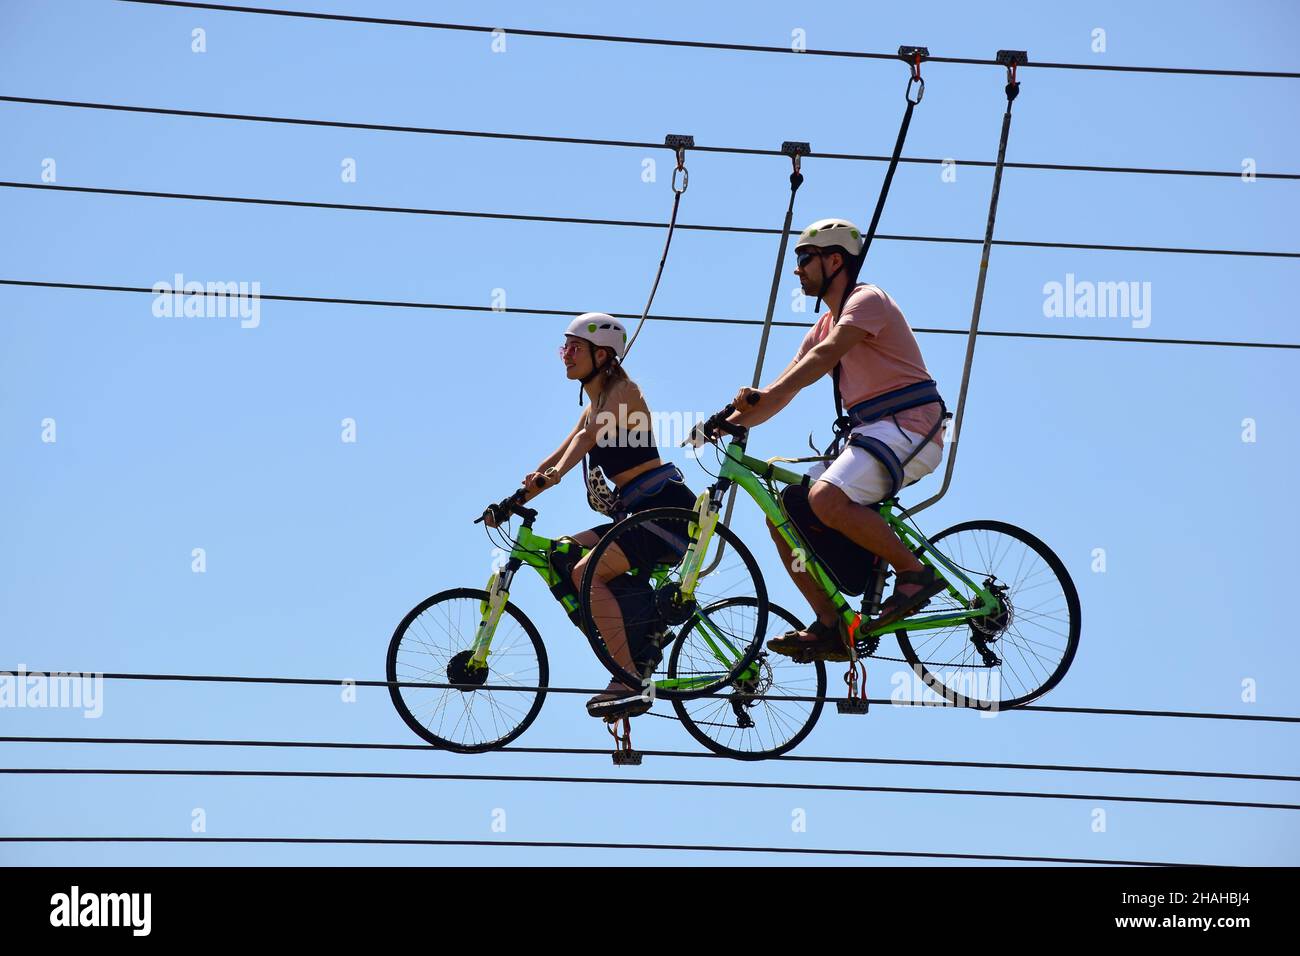 Bei der Attraktion fahren ein Mann und ein Mädchen auf Fahrrädern an Hängeseilen und lächeln. Von unten gegen den blauen Himmel fotografiert Stockfoto